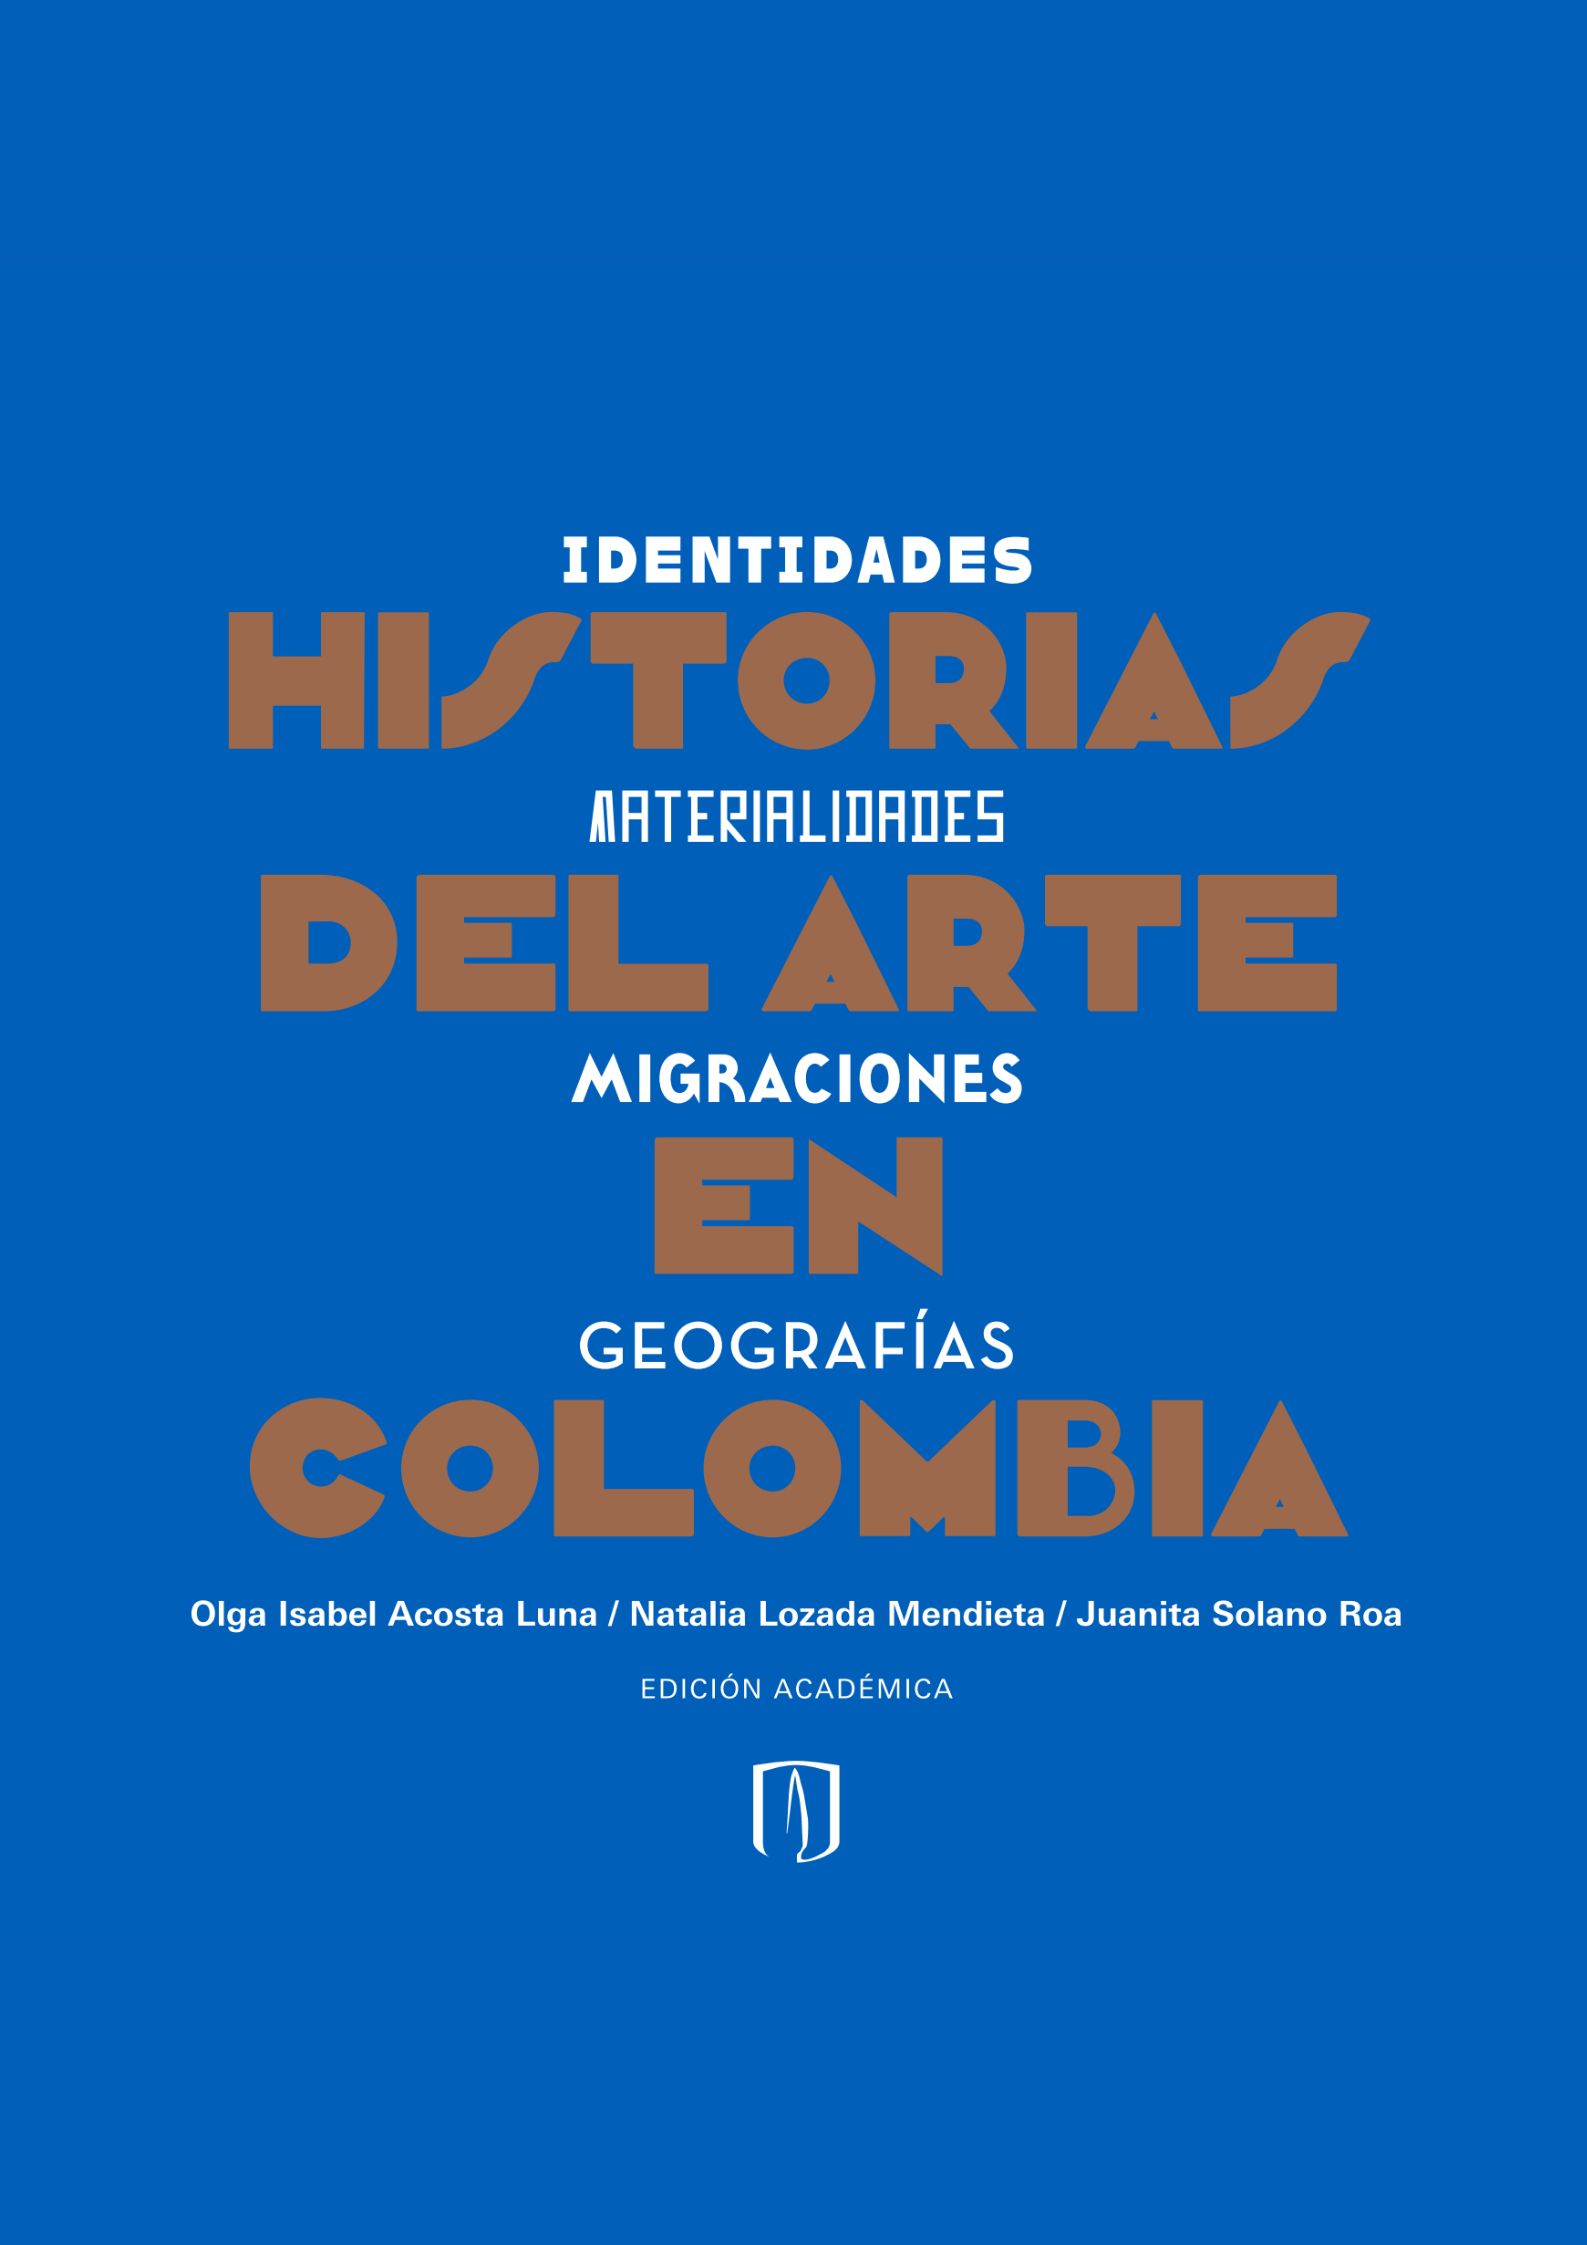 Historias del arte en Colombia. Identidades, materialidades, migraciones, geografías